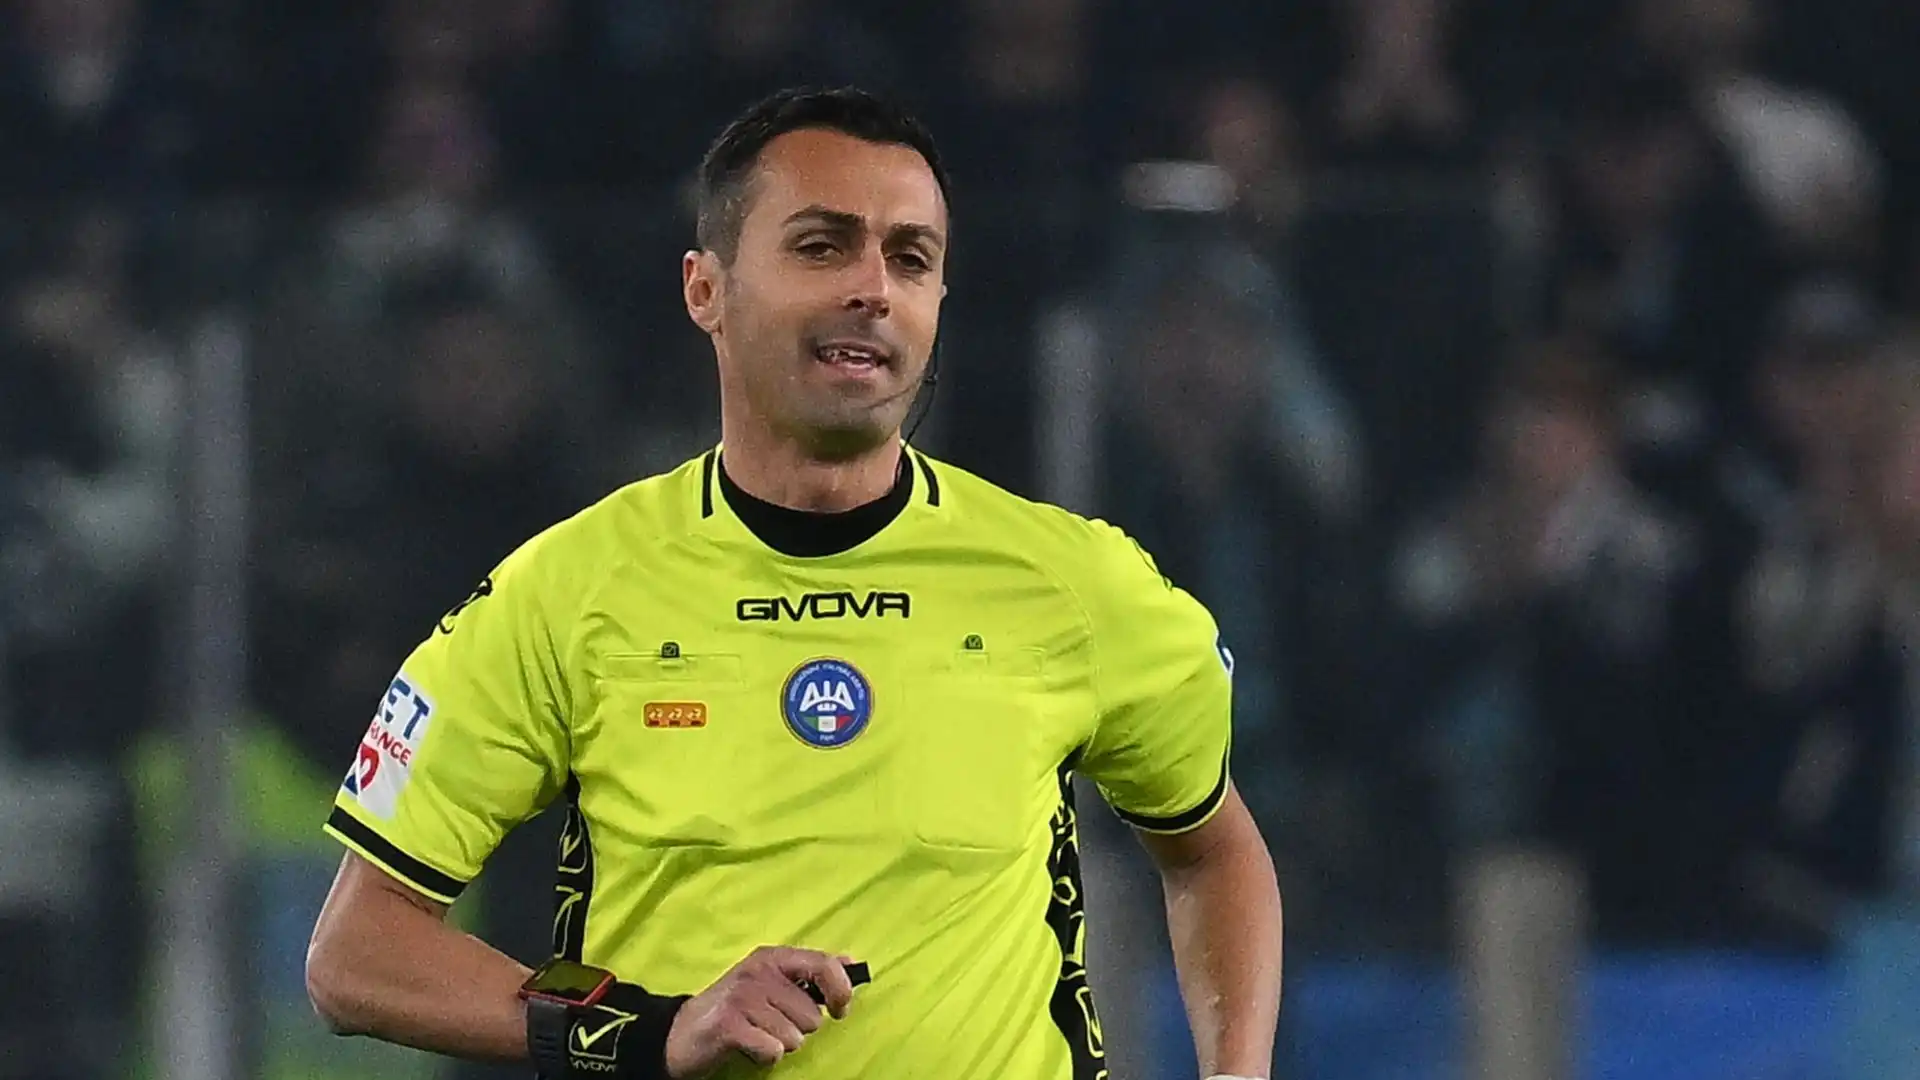 L'arbitro è stato fortemente contestato dalla Lazio per alcune decisioni prese nel corso del match contro il Milan